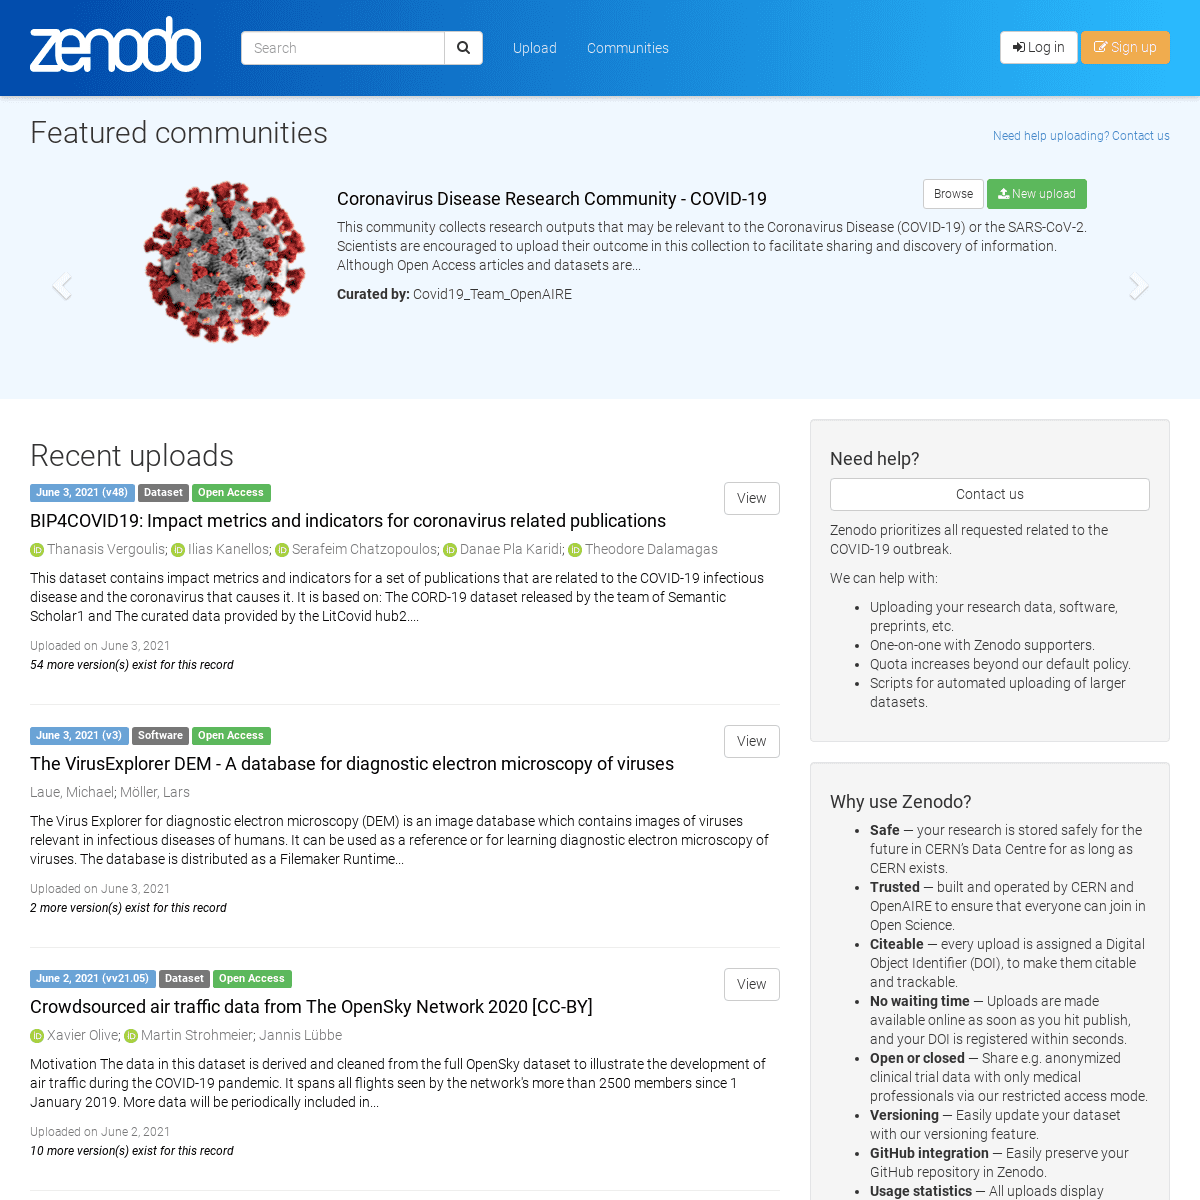 A complete backup of https://zenodo.org